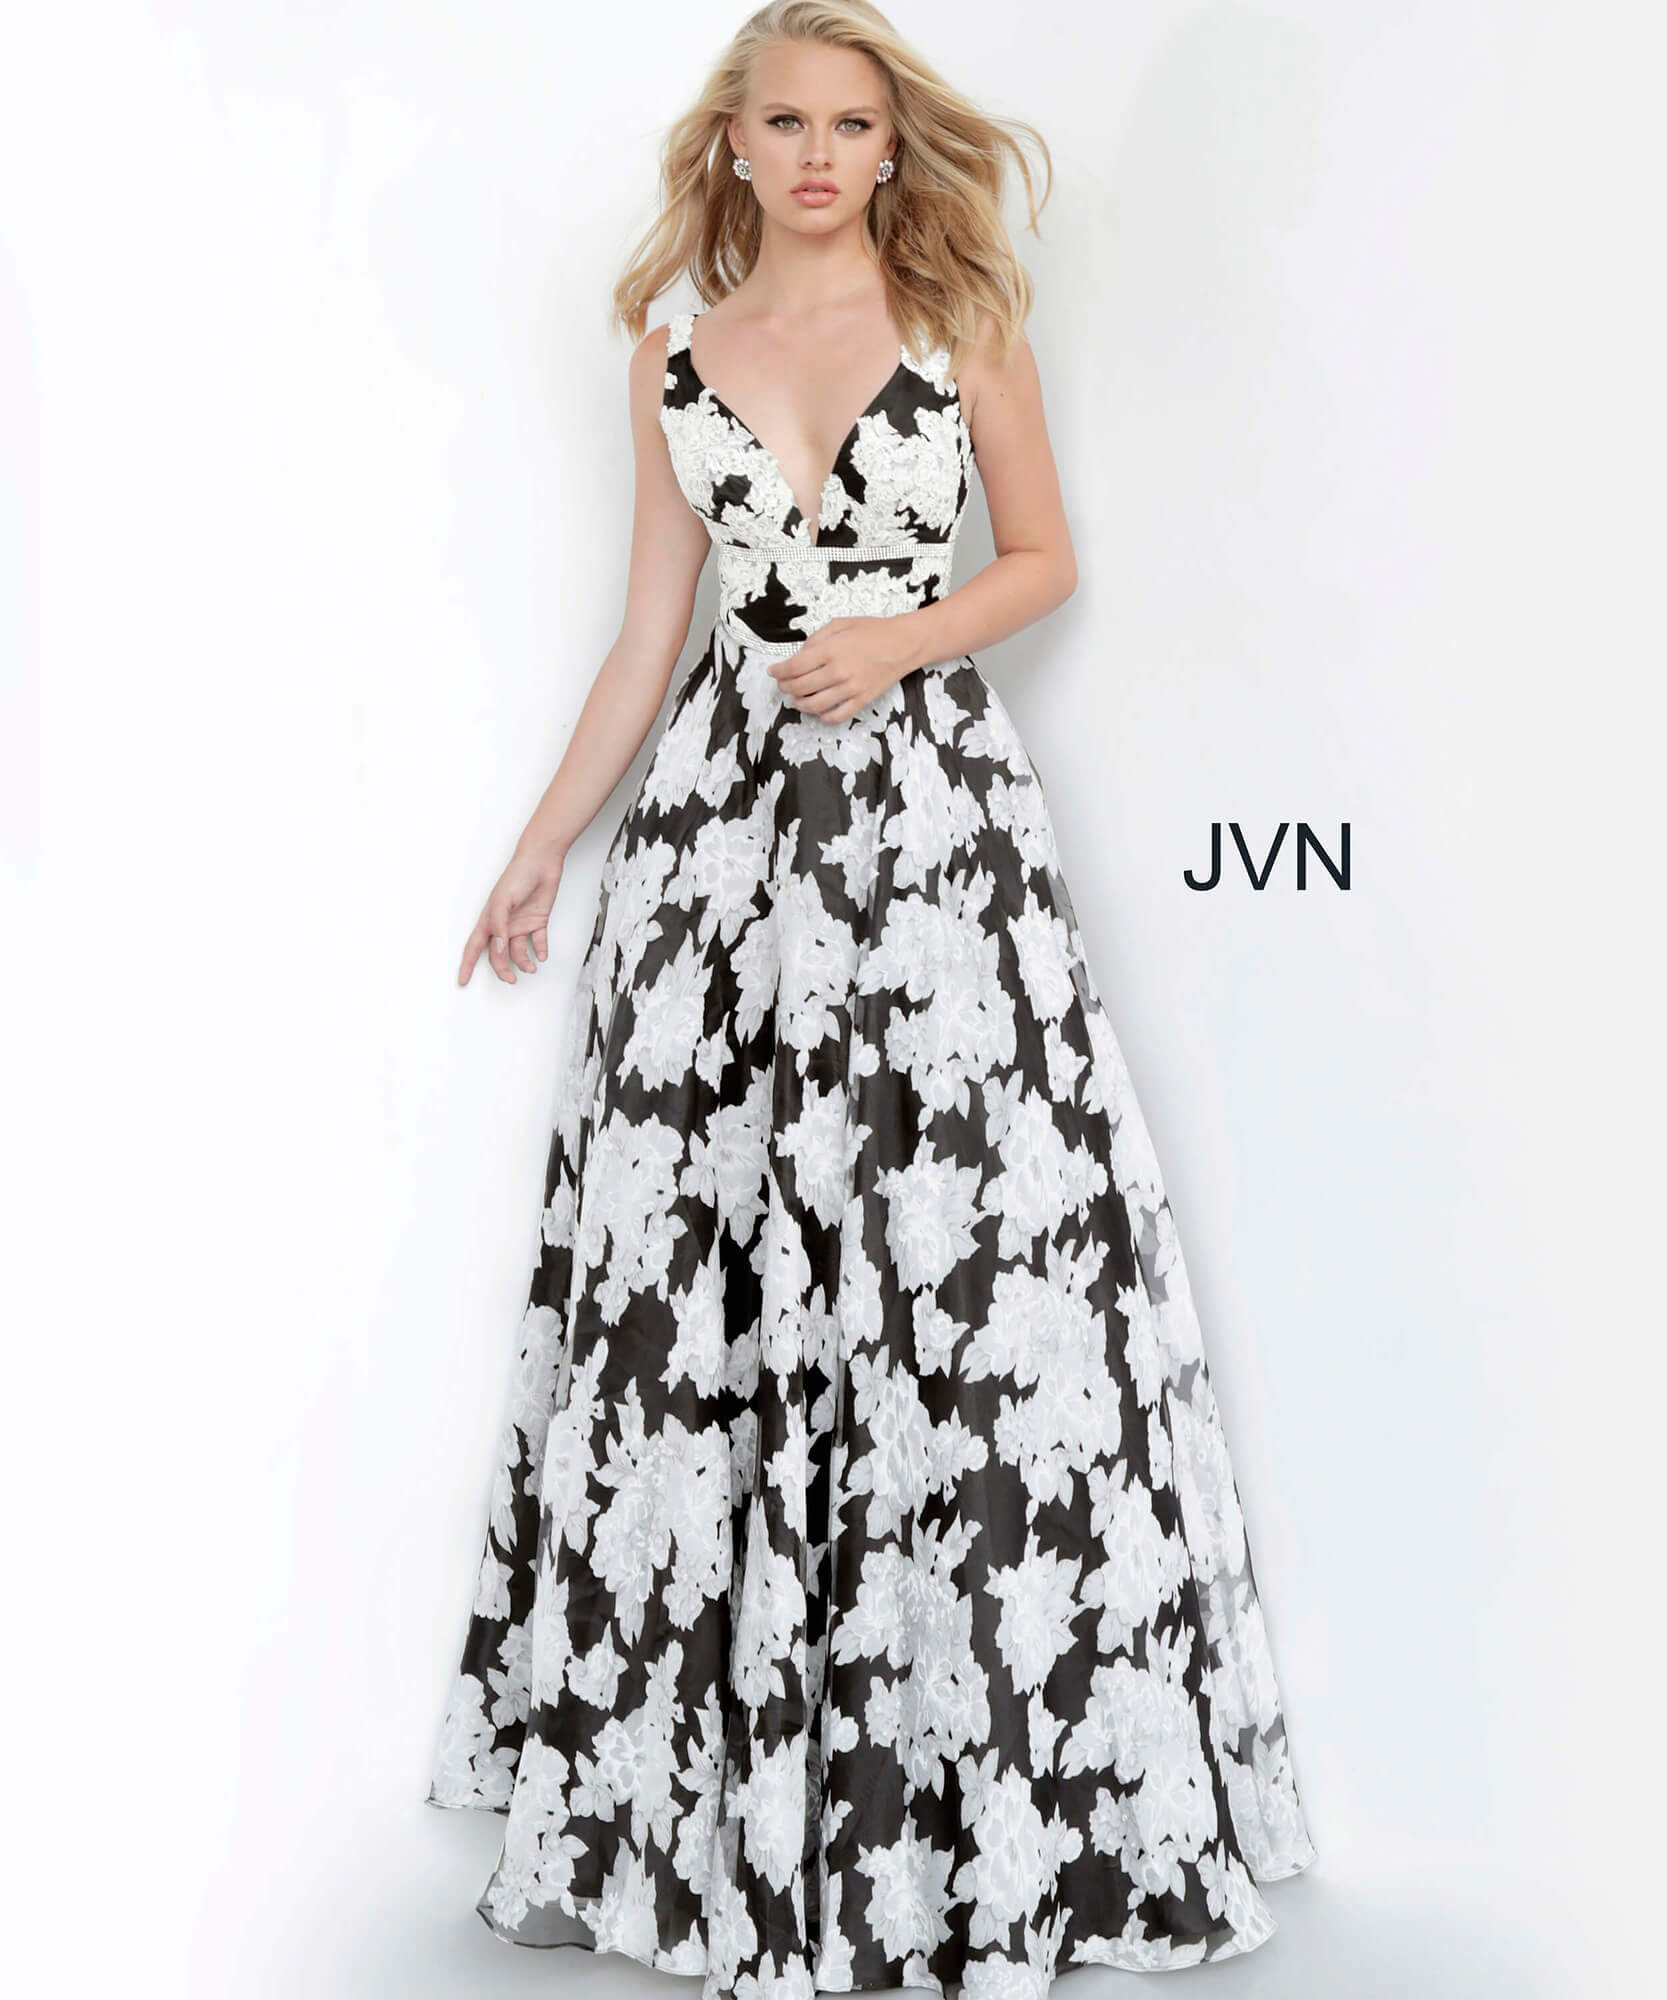 JVN00825 Dress| JVN Black and White Print V Neck A Line Prom Gown JVN00825